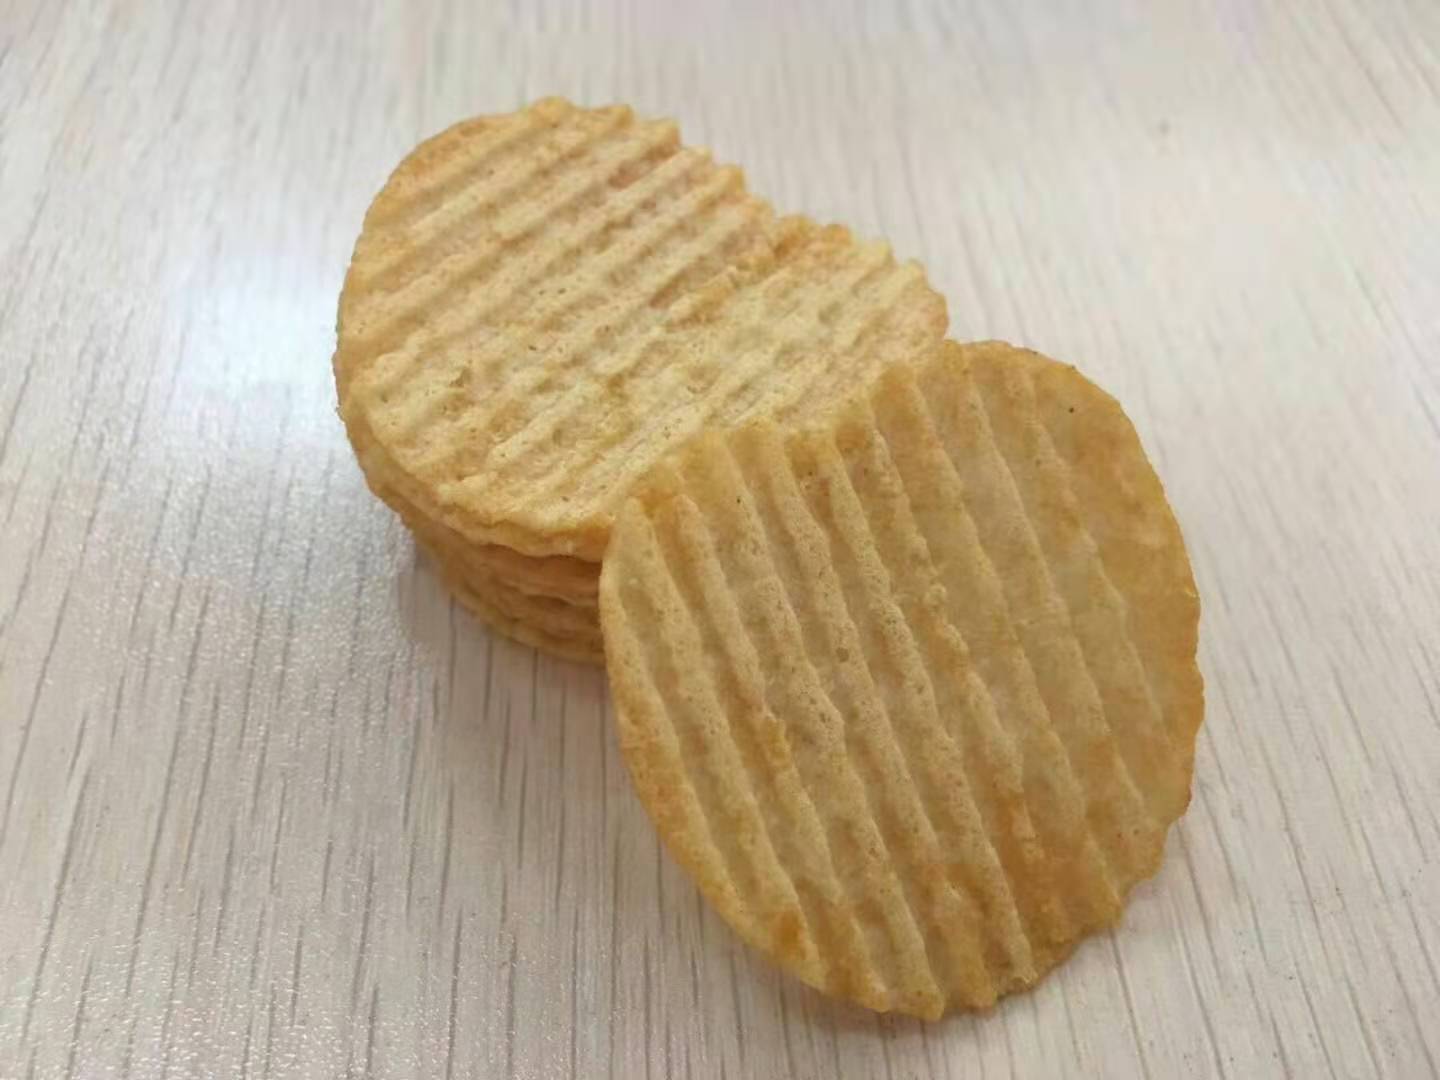 Baked potato chips